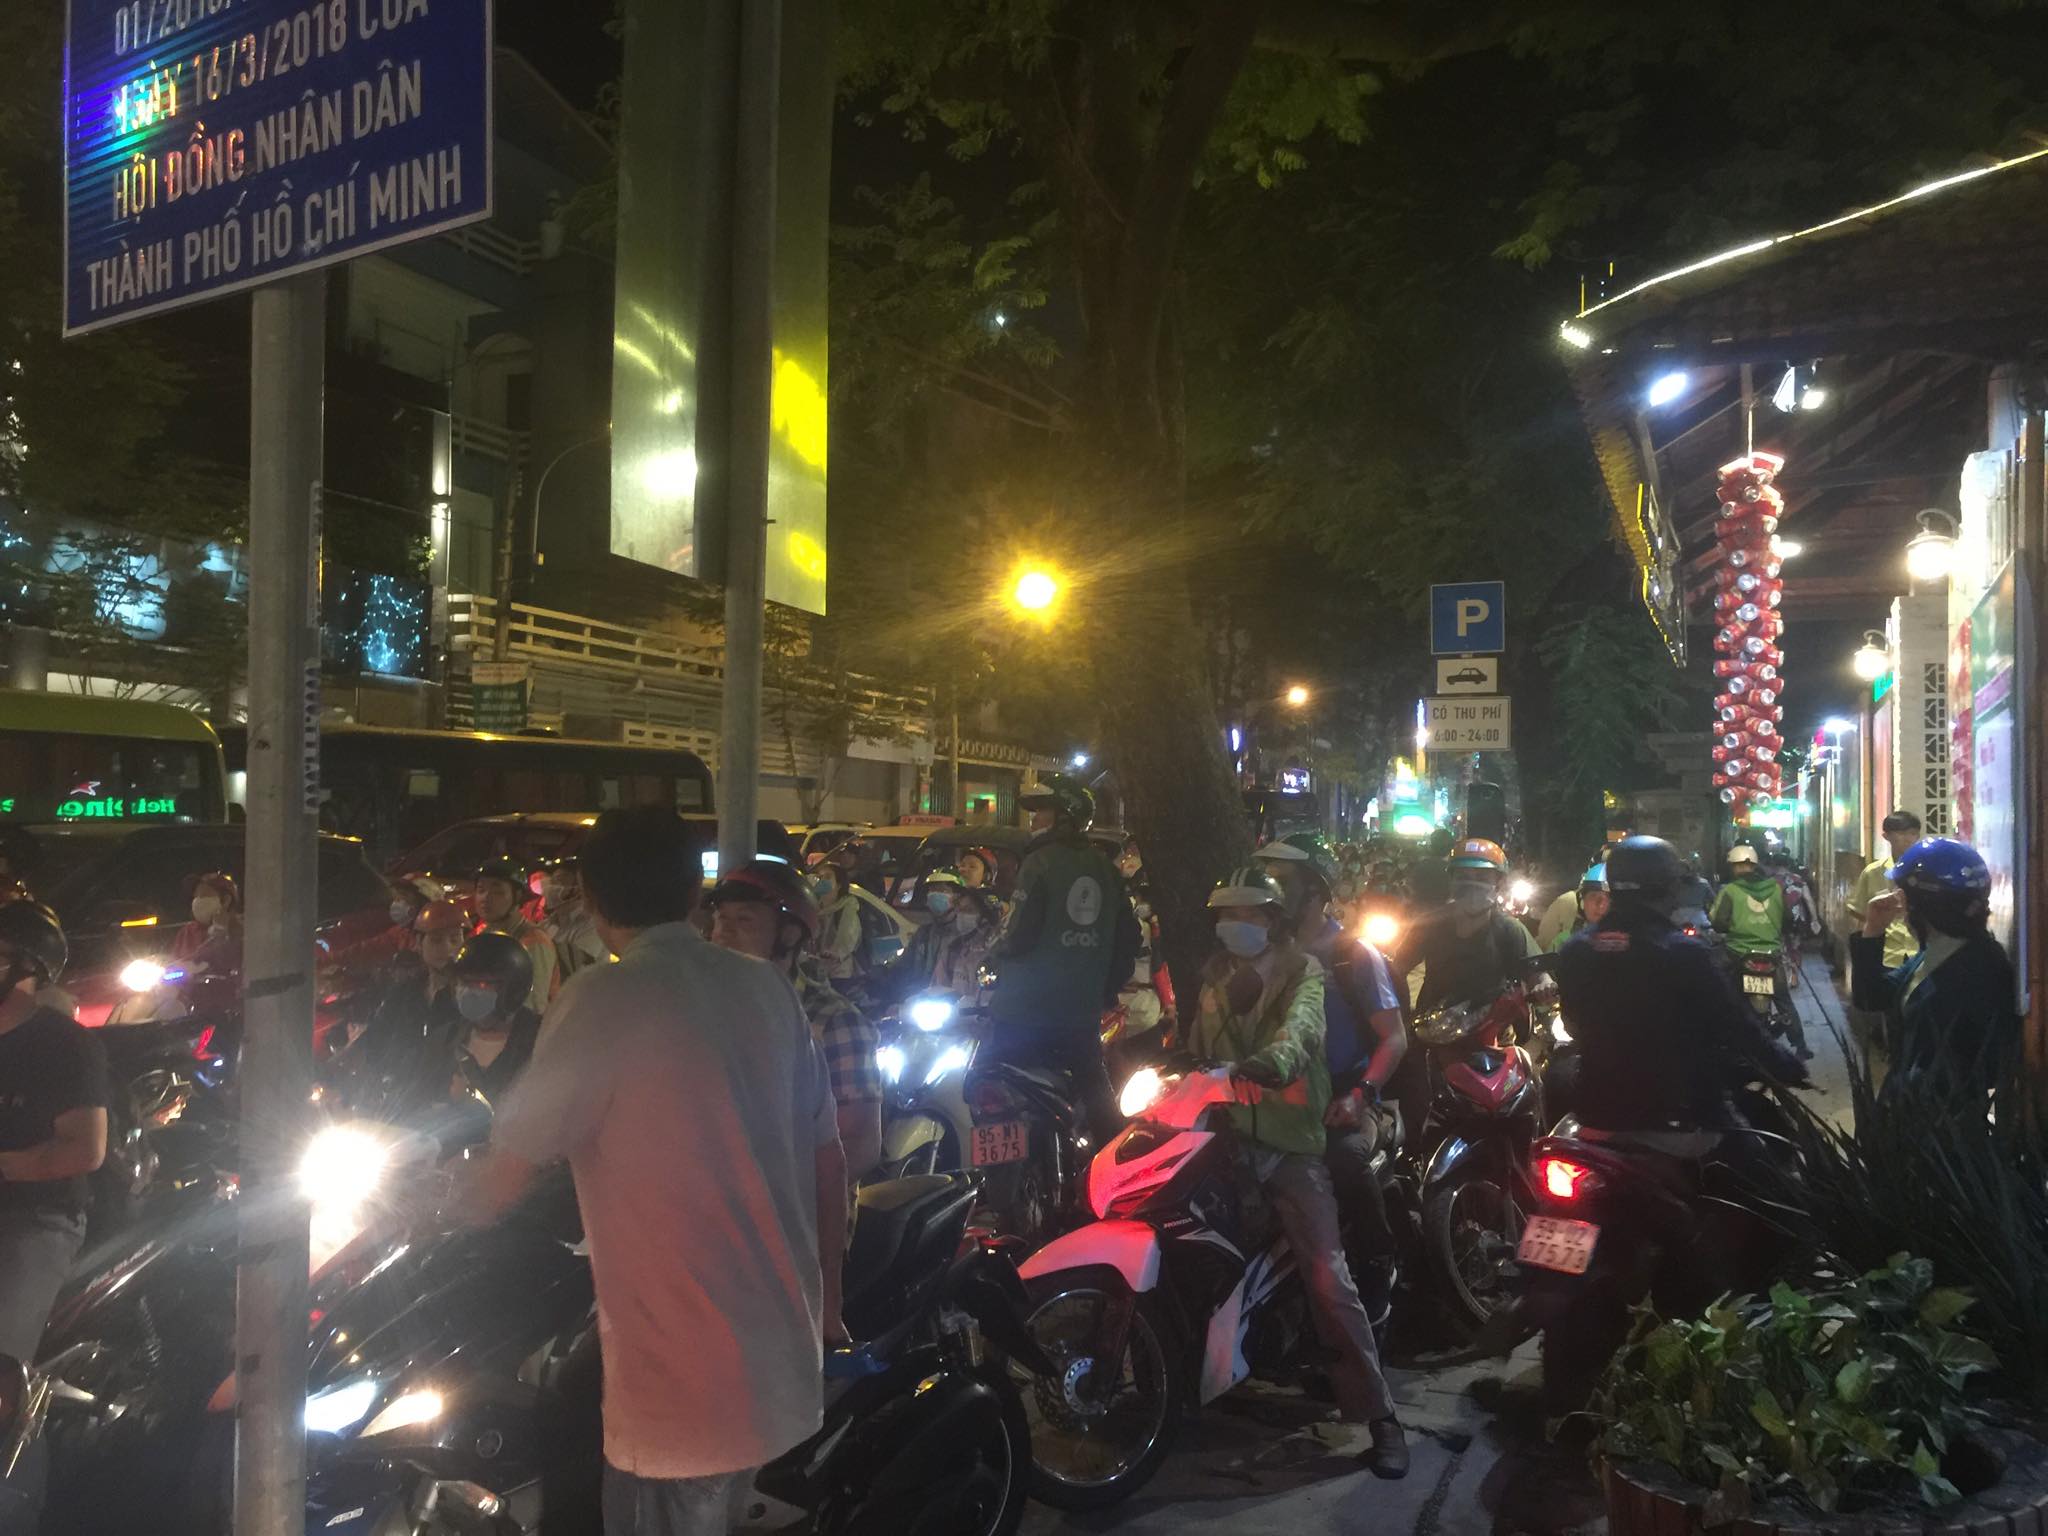 Sài Gòn Review  Tổng hợp những hình ảnh kẹt xe tại Sài  Facebook